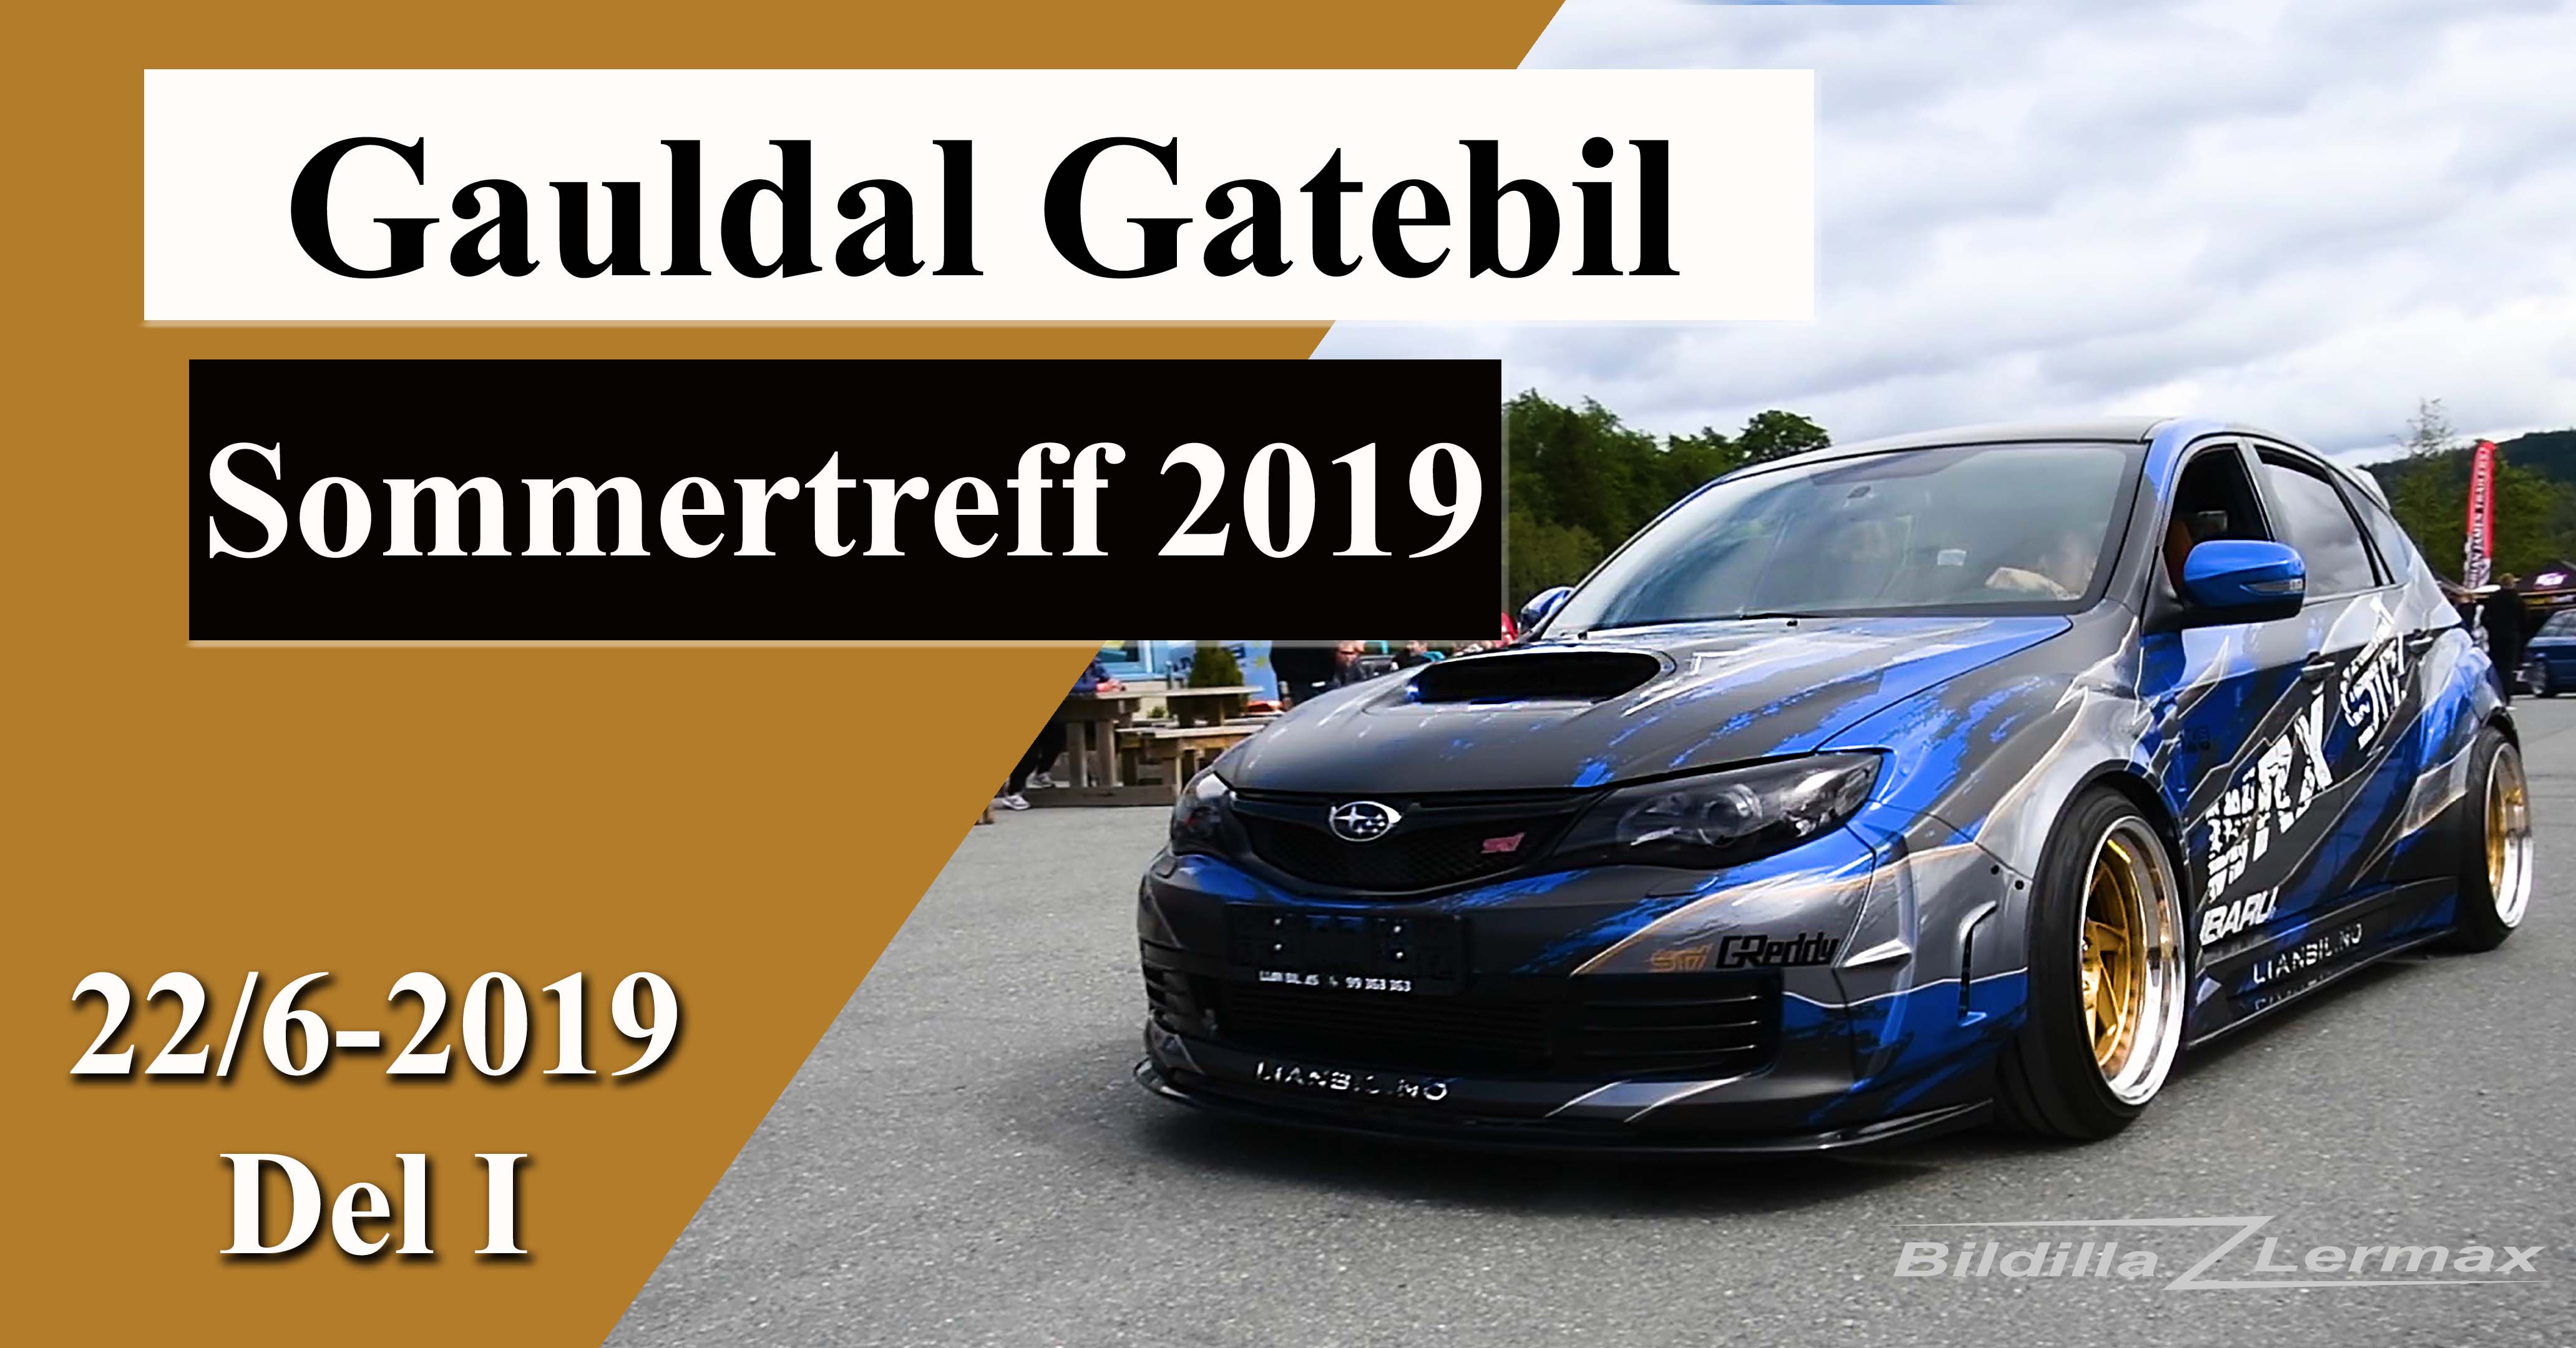 Gauldal Gatebil`s Sommertreff 2019.